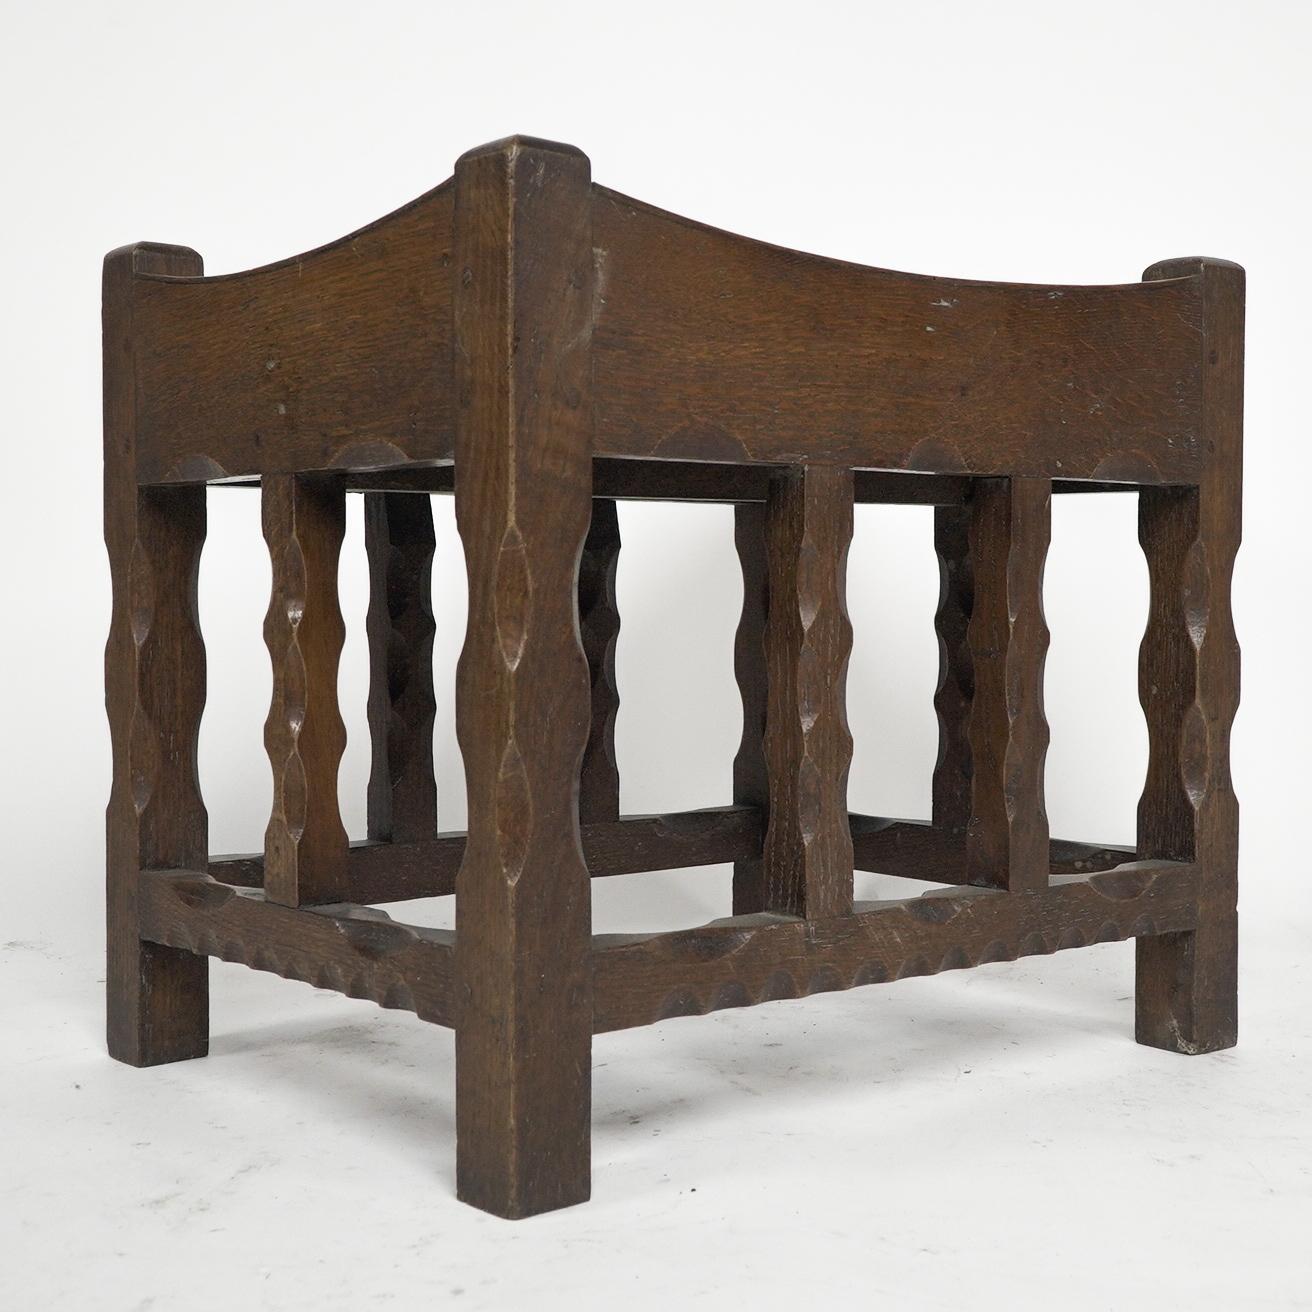 Romney Green zugeschrieben. Ein Hocker aus Eichenholz der Cotswold School aus der Zeit des Arts and Crafts mit einem geformten Sitz und geschnitzten, abgeschrägten Beinen und Bahren.
